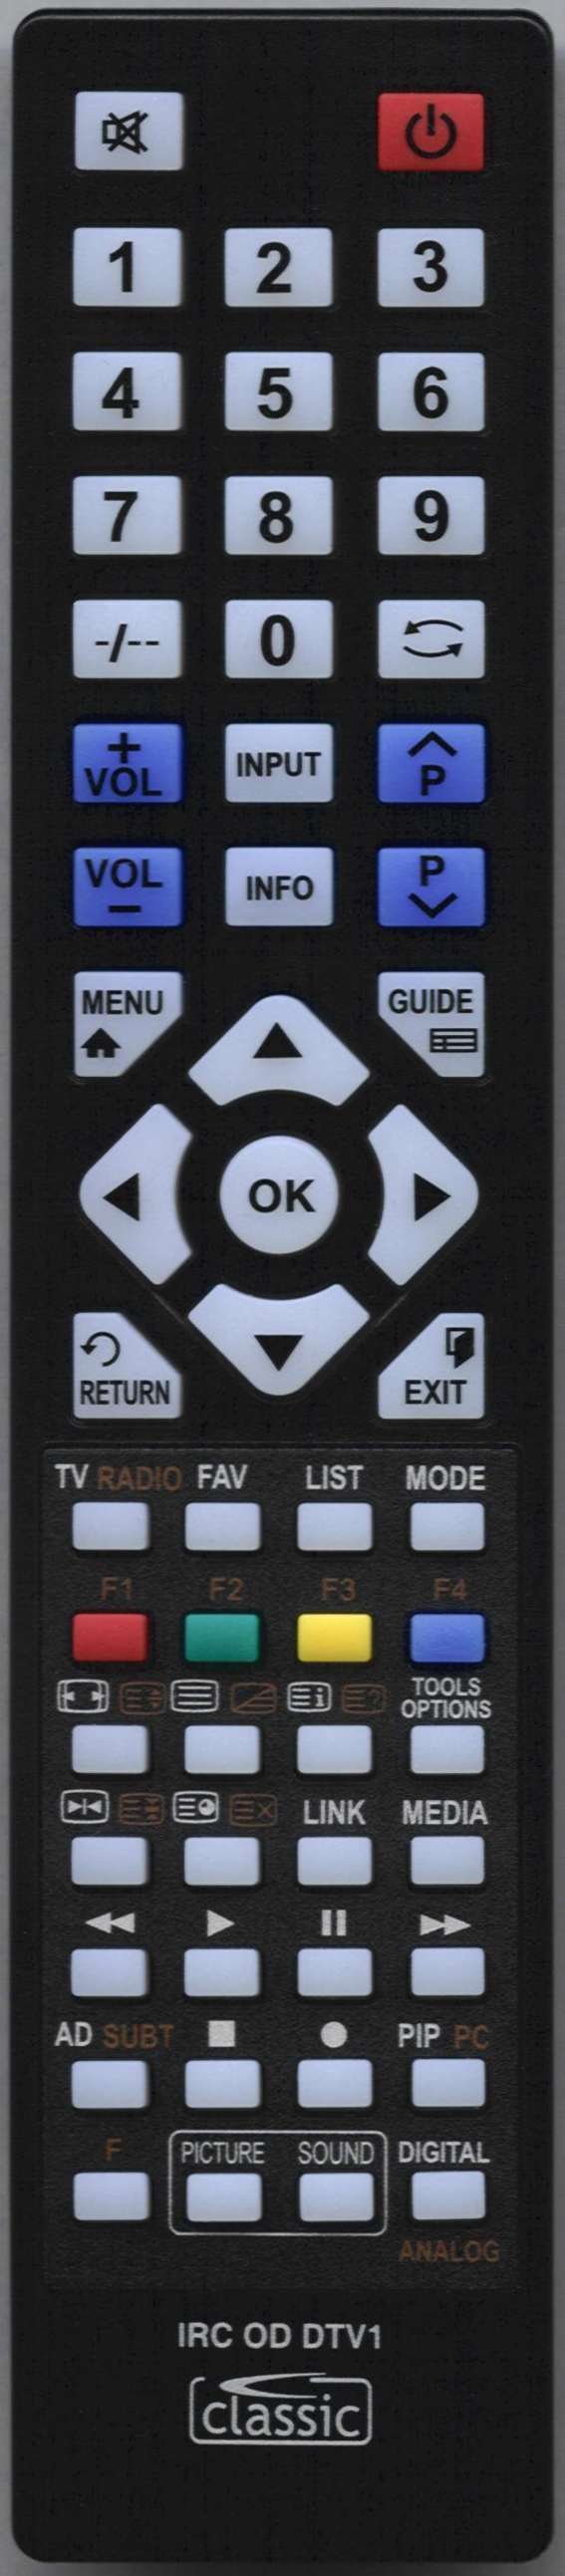 ORION TV32FX555BD Remote Control